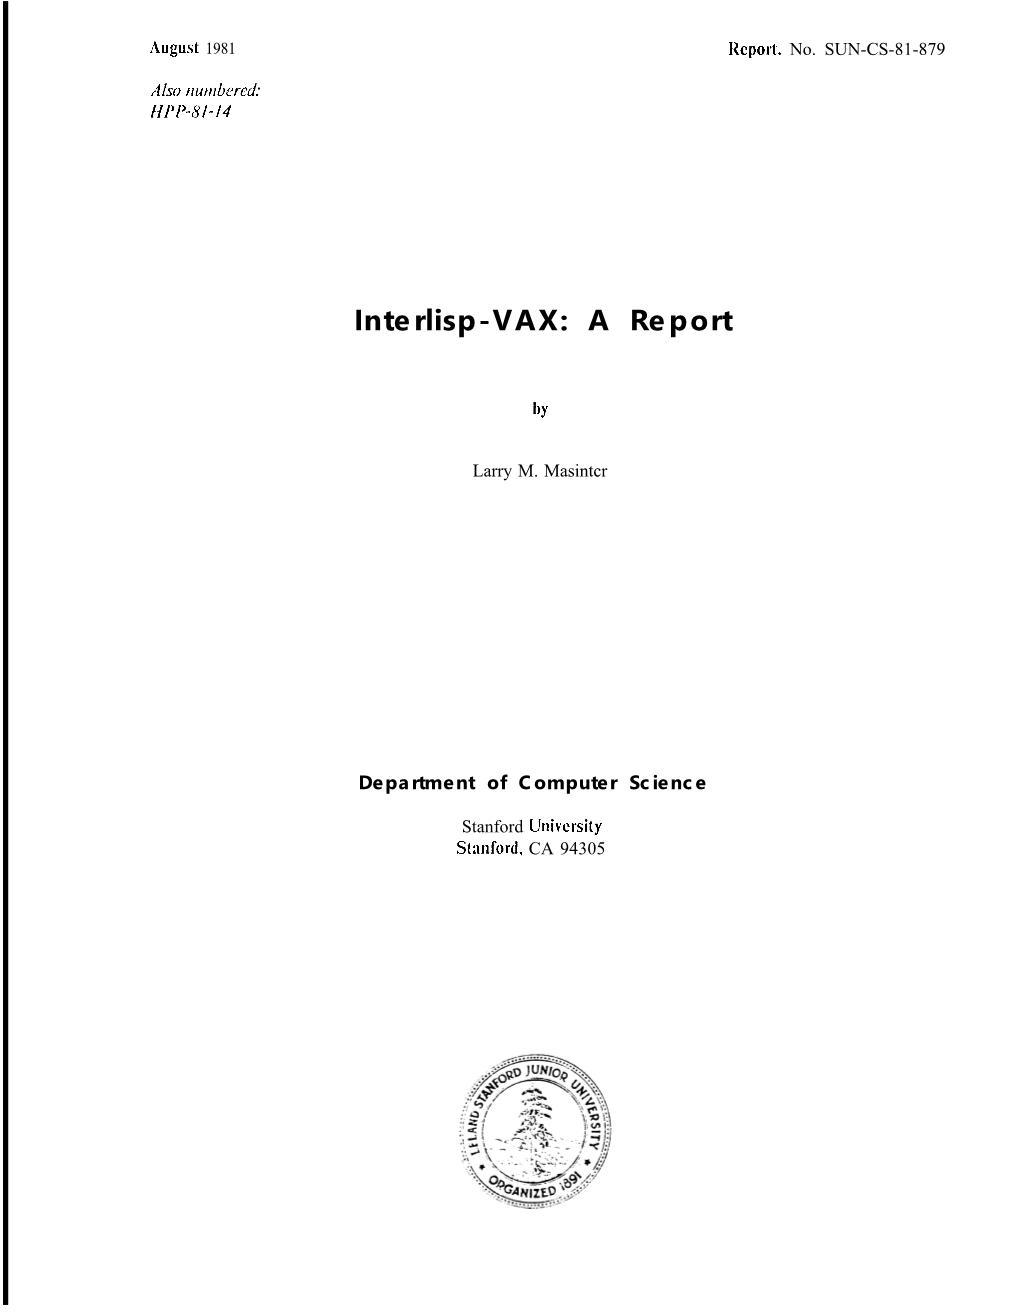 Interlisp-VAX: a Report